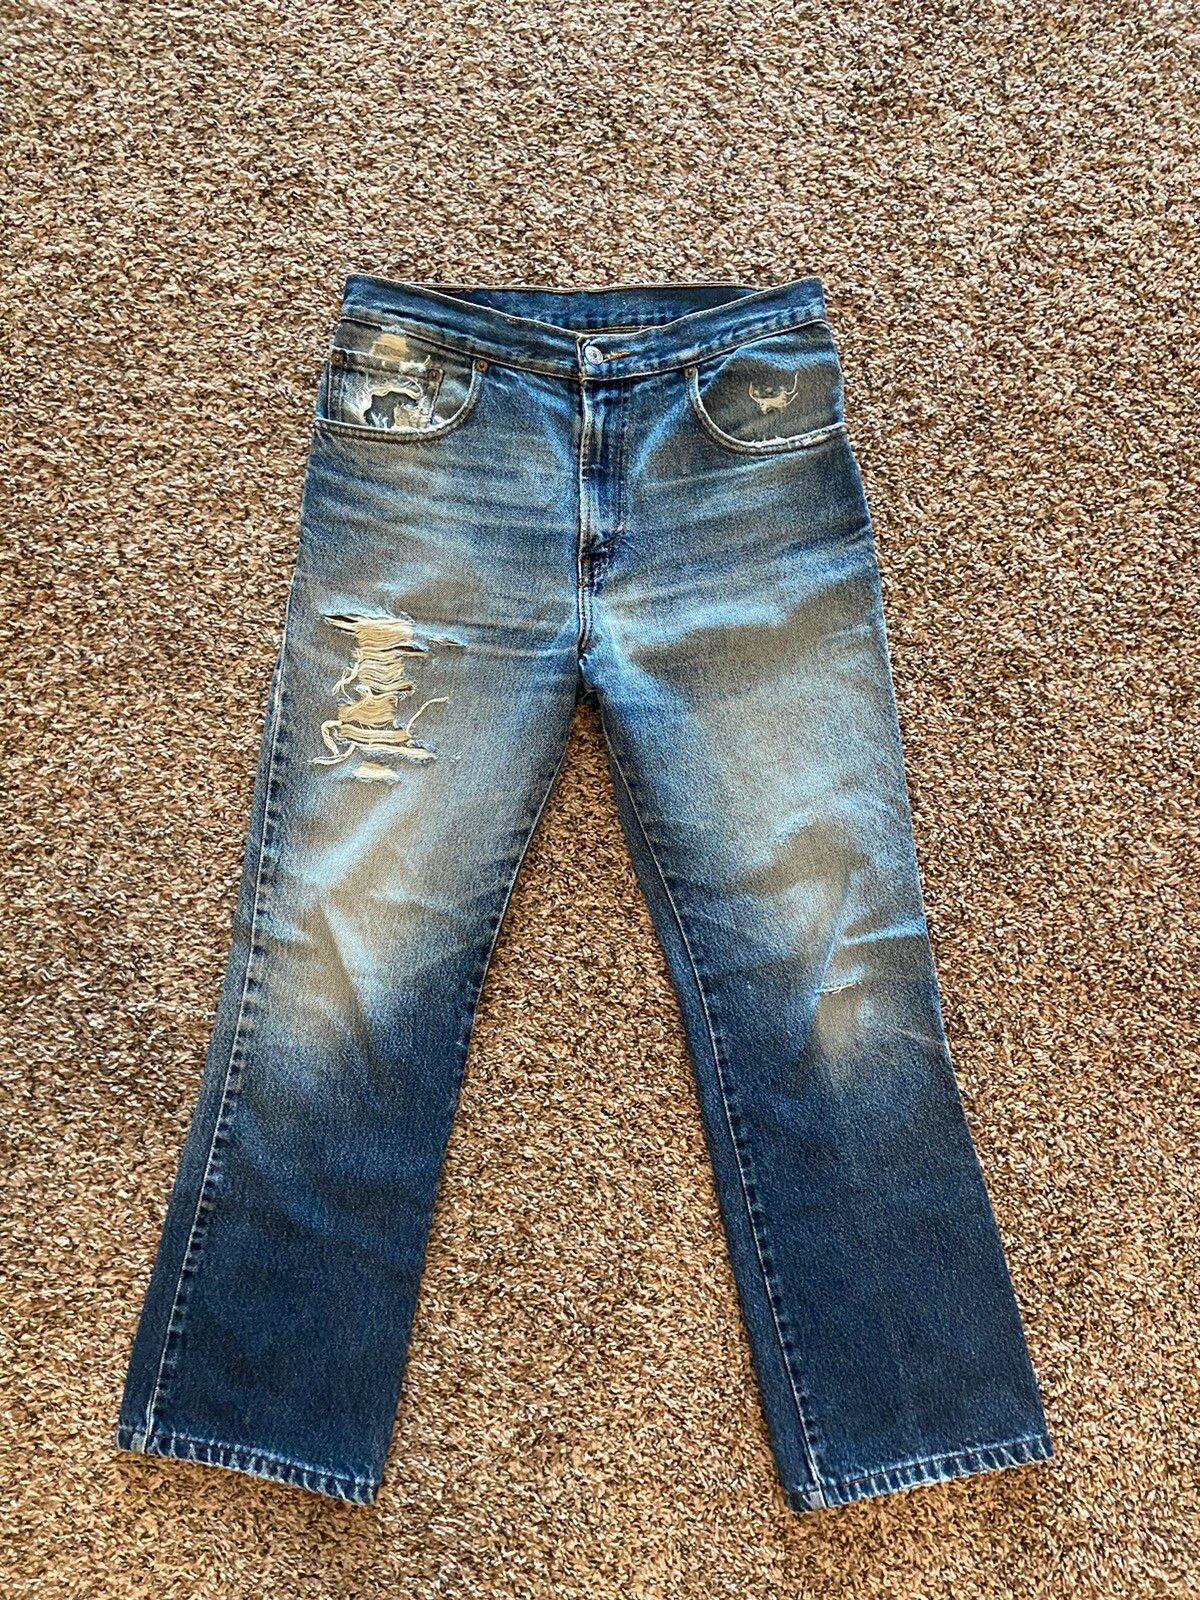 Vintage Vintage Levi’s 505 Distressed Denim Jeans Size US 30 / EU 46 - 1 Preview